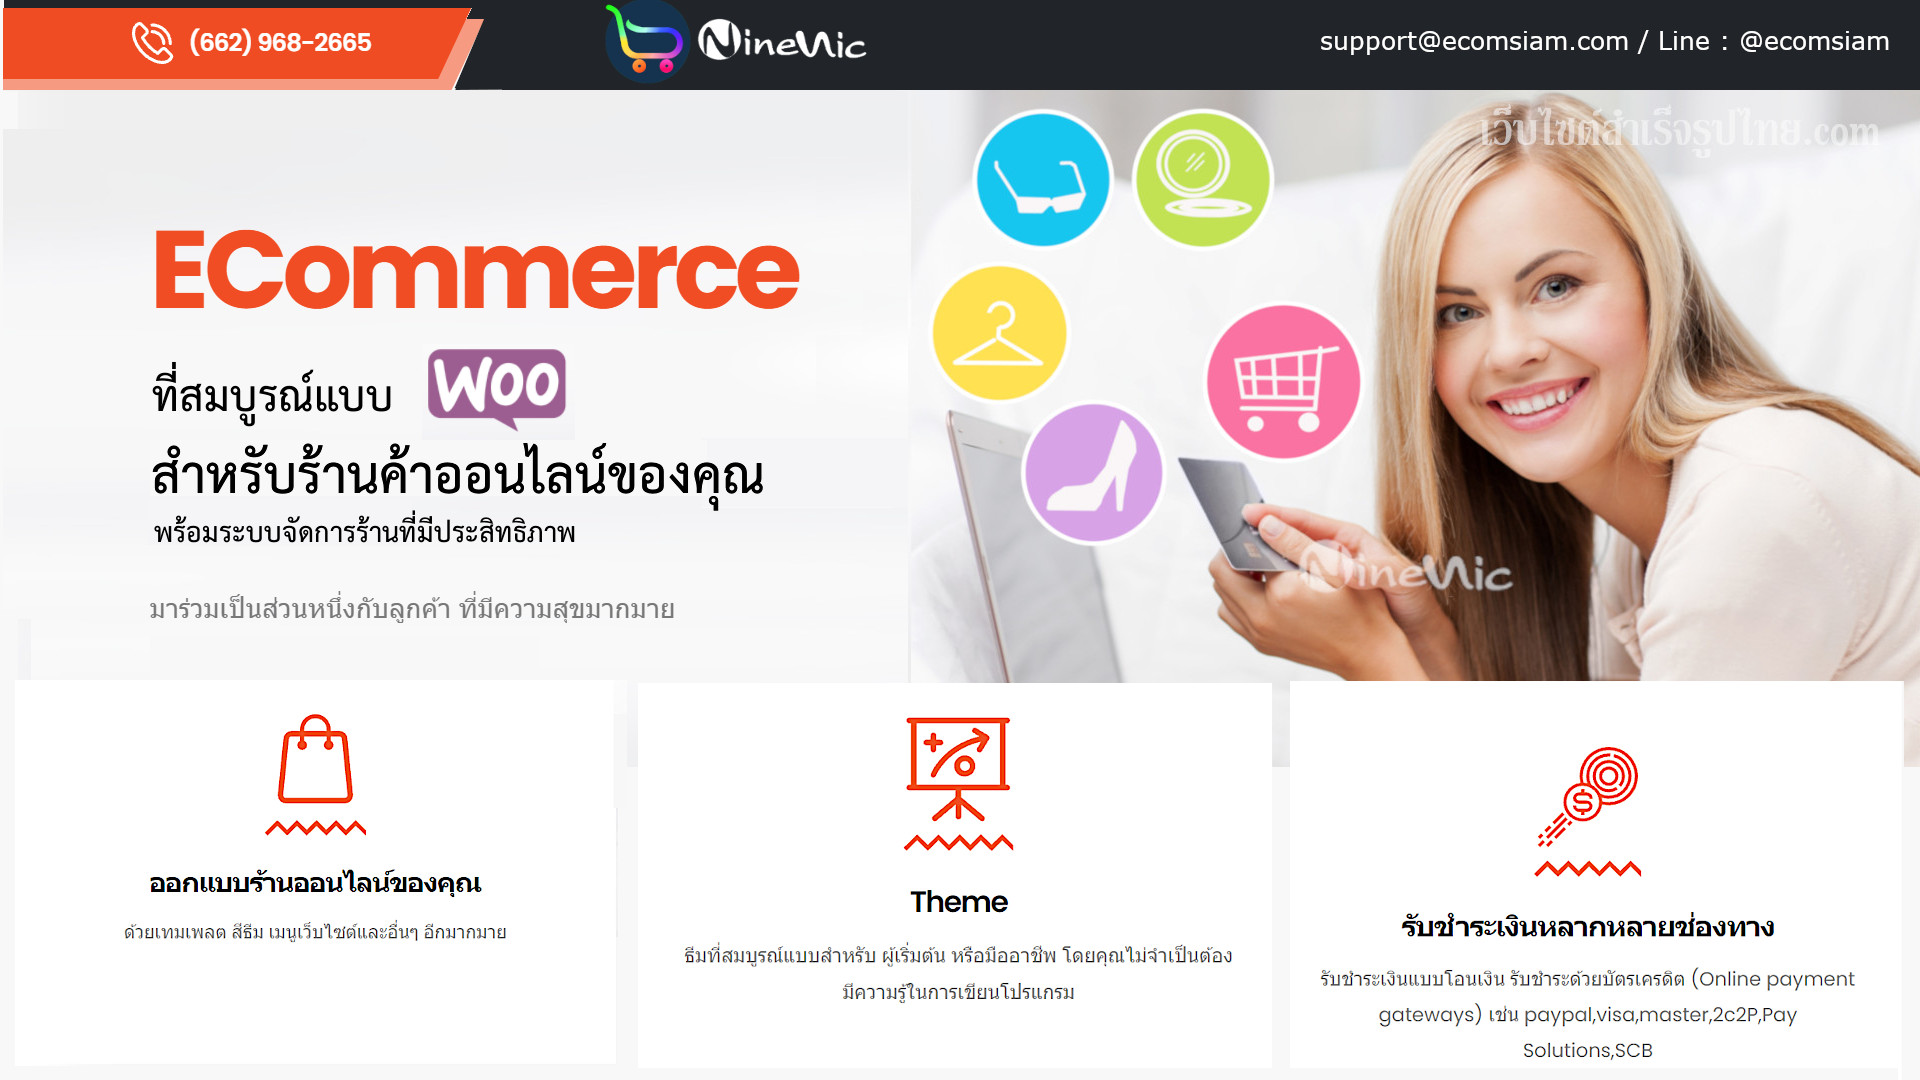 เว็บไซต์สำเร็จรูป ninenic - แนะนำอีคอมเมอร์ส เปิดร้านค้าออนไลน์ พร้อมระบบออนไลน์ และซื้อขายแบบ ecommerce ที่ทันสมัย